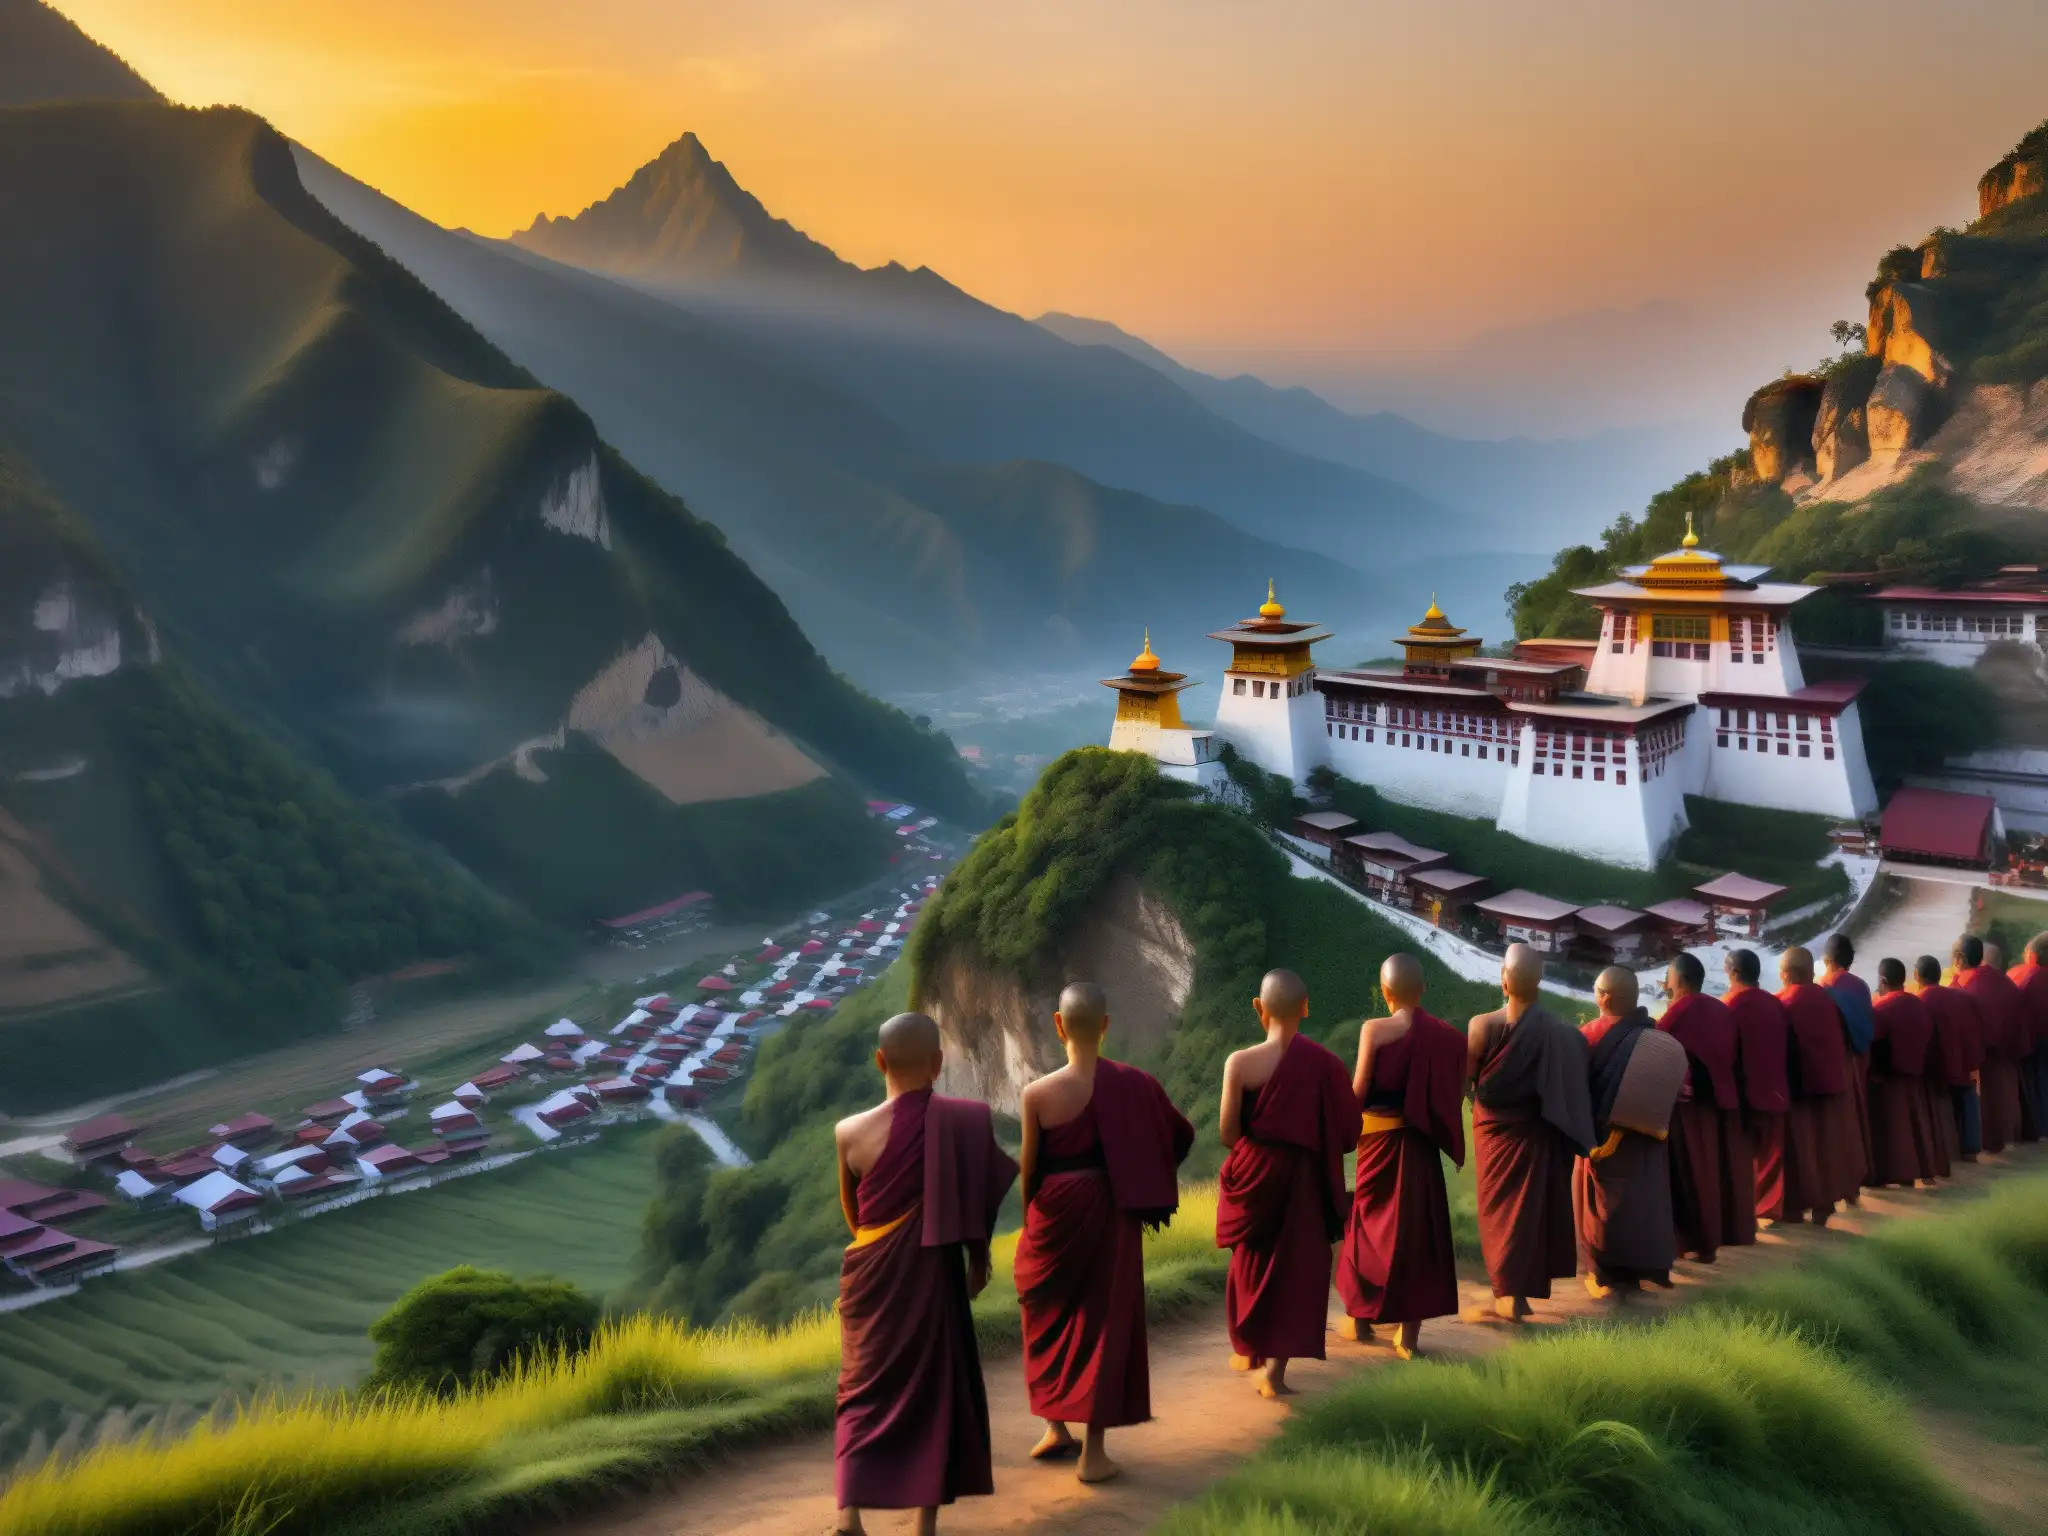 Un paisaje montañoso sereno y místico al amanecer, con un monasterio budista en un acantilado alto, rodeado de banderas de oración